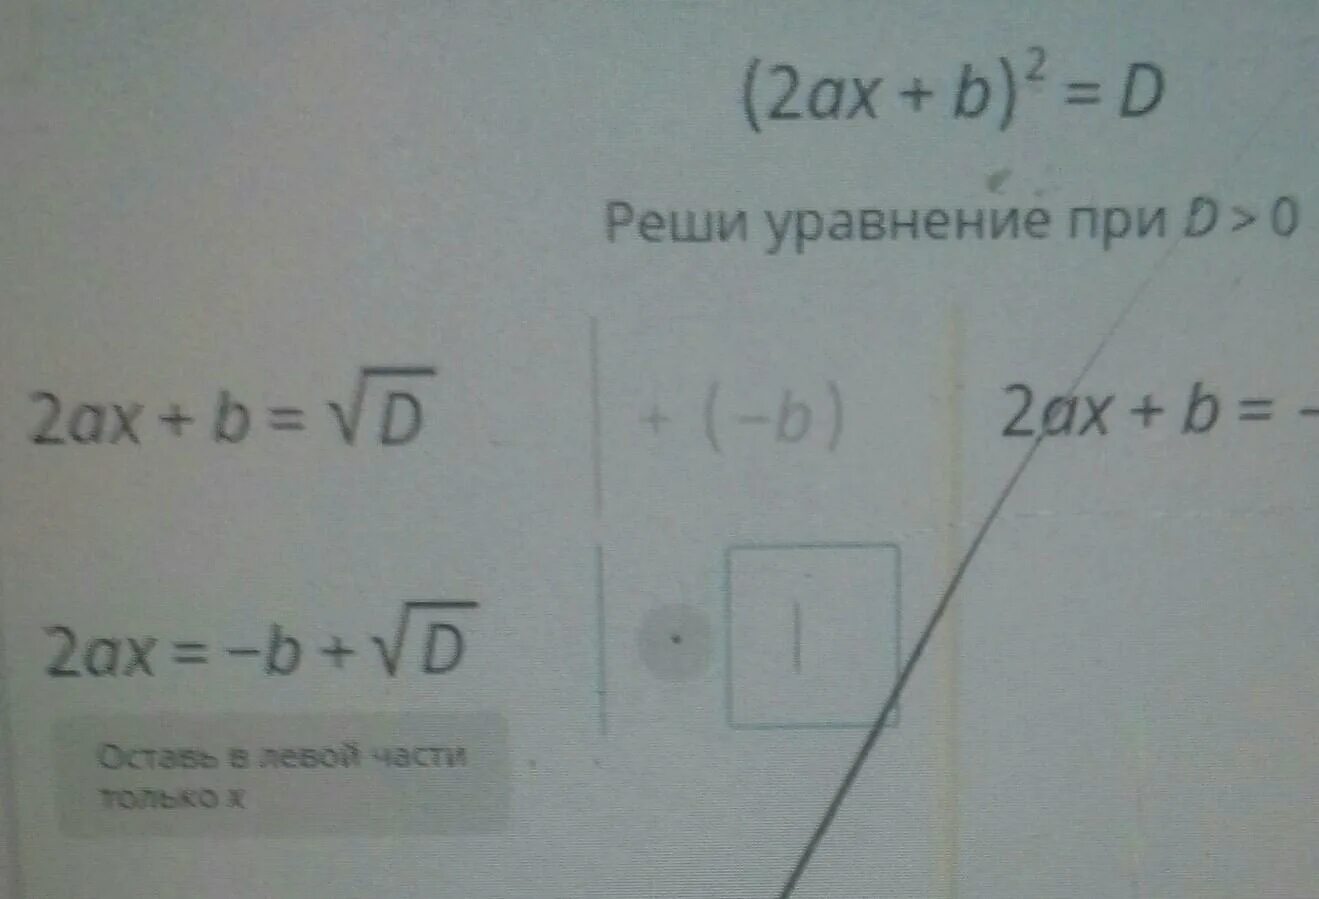 Реши уравнение при d>0 учи ру. 2ax b 2 d реши уравнение при d>0. Решить уравнение при d>0 2ax+b. Решите уравнение при d>0 2ax+b 2.